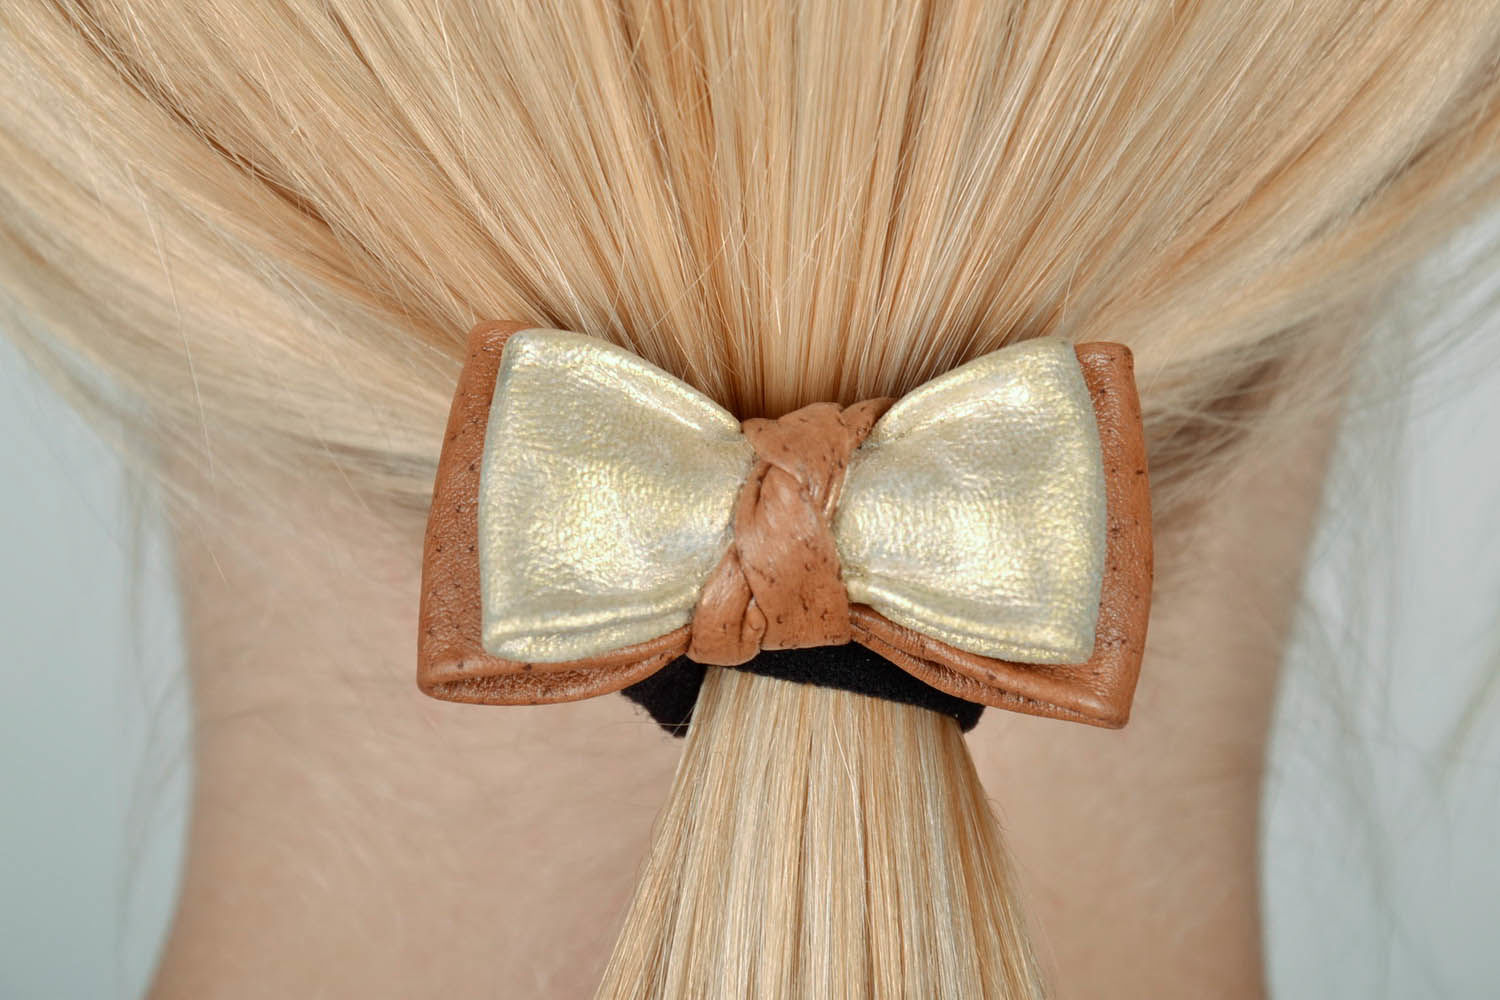 Élastique à cheveux en cuir décoré de noeud photo 5